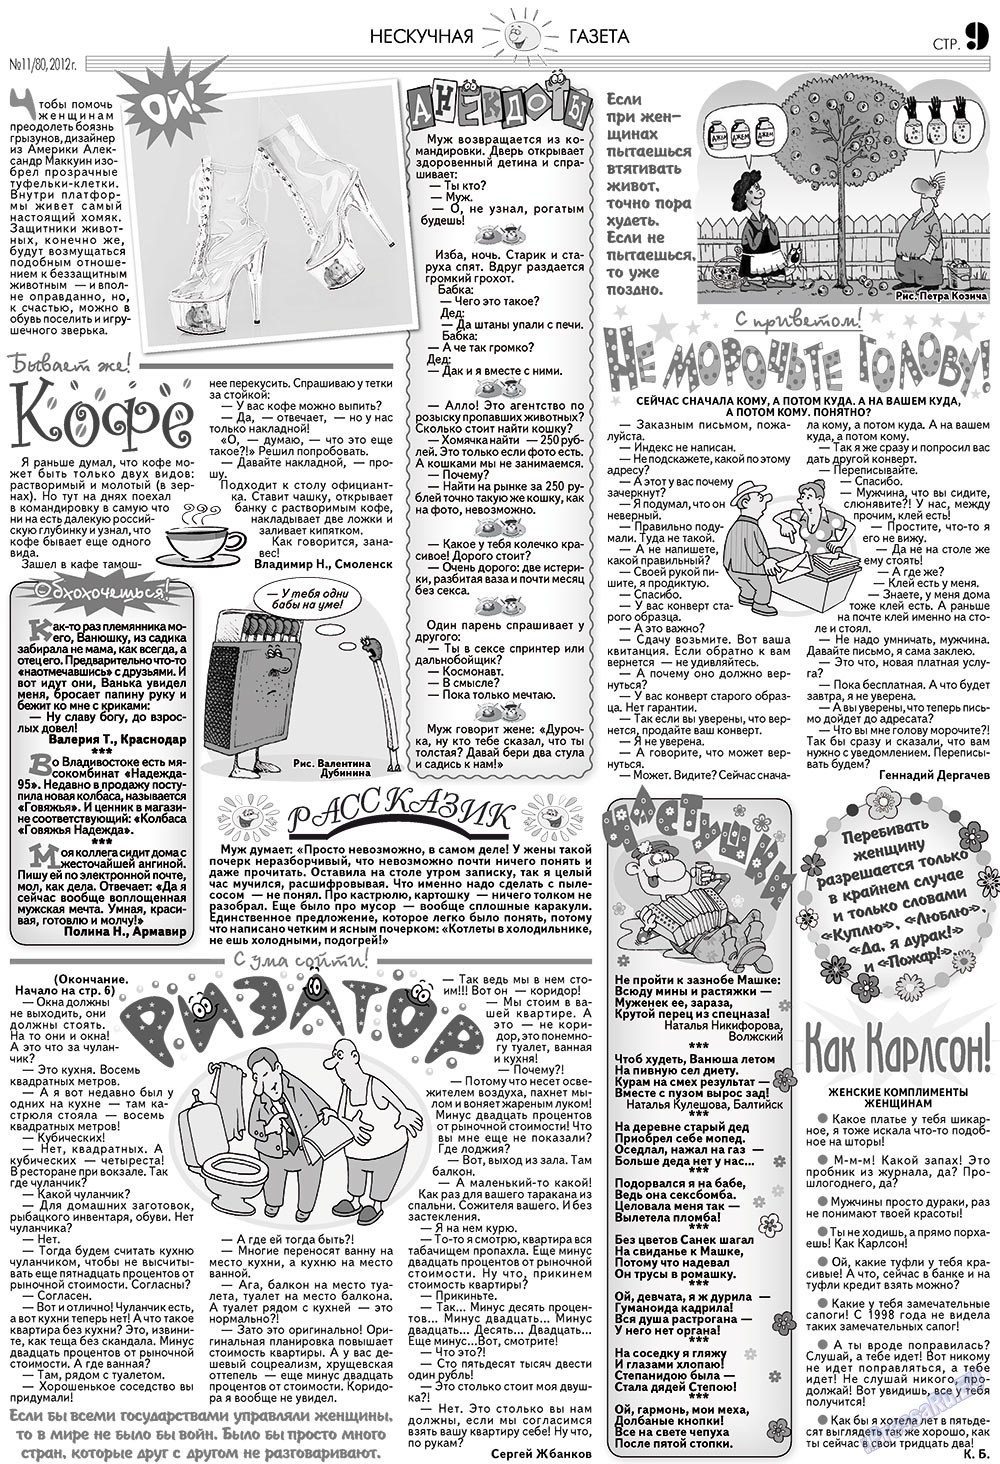 Нескучная газета, журнал. 2012 №11 стр.9